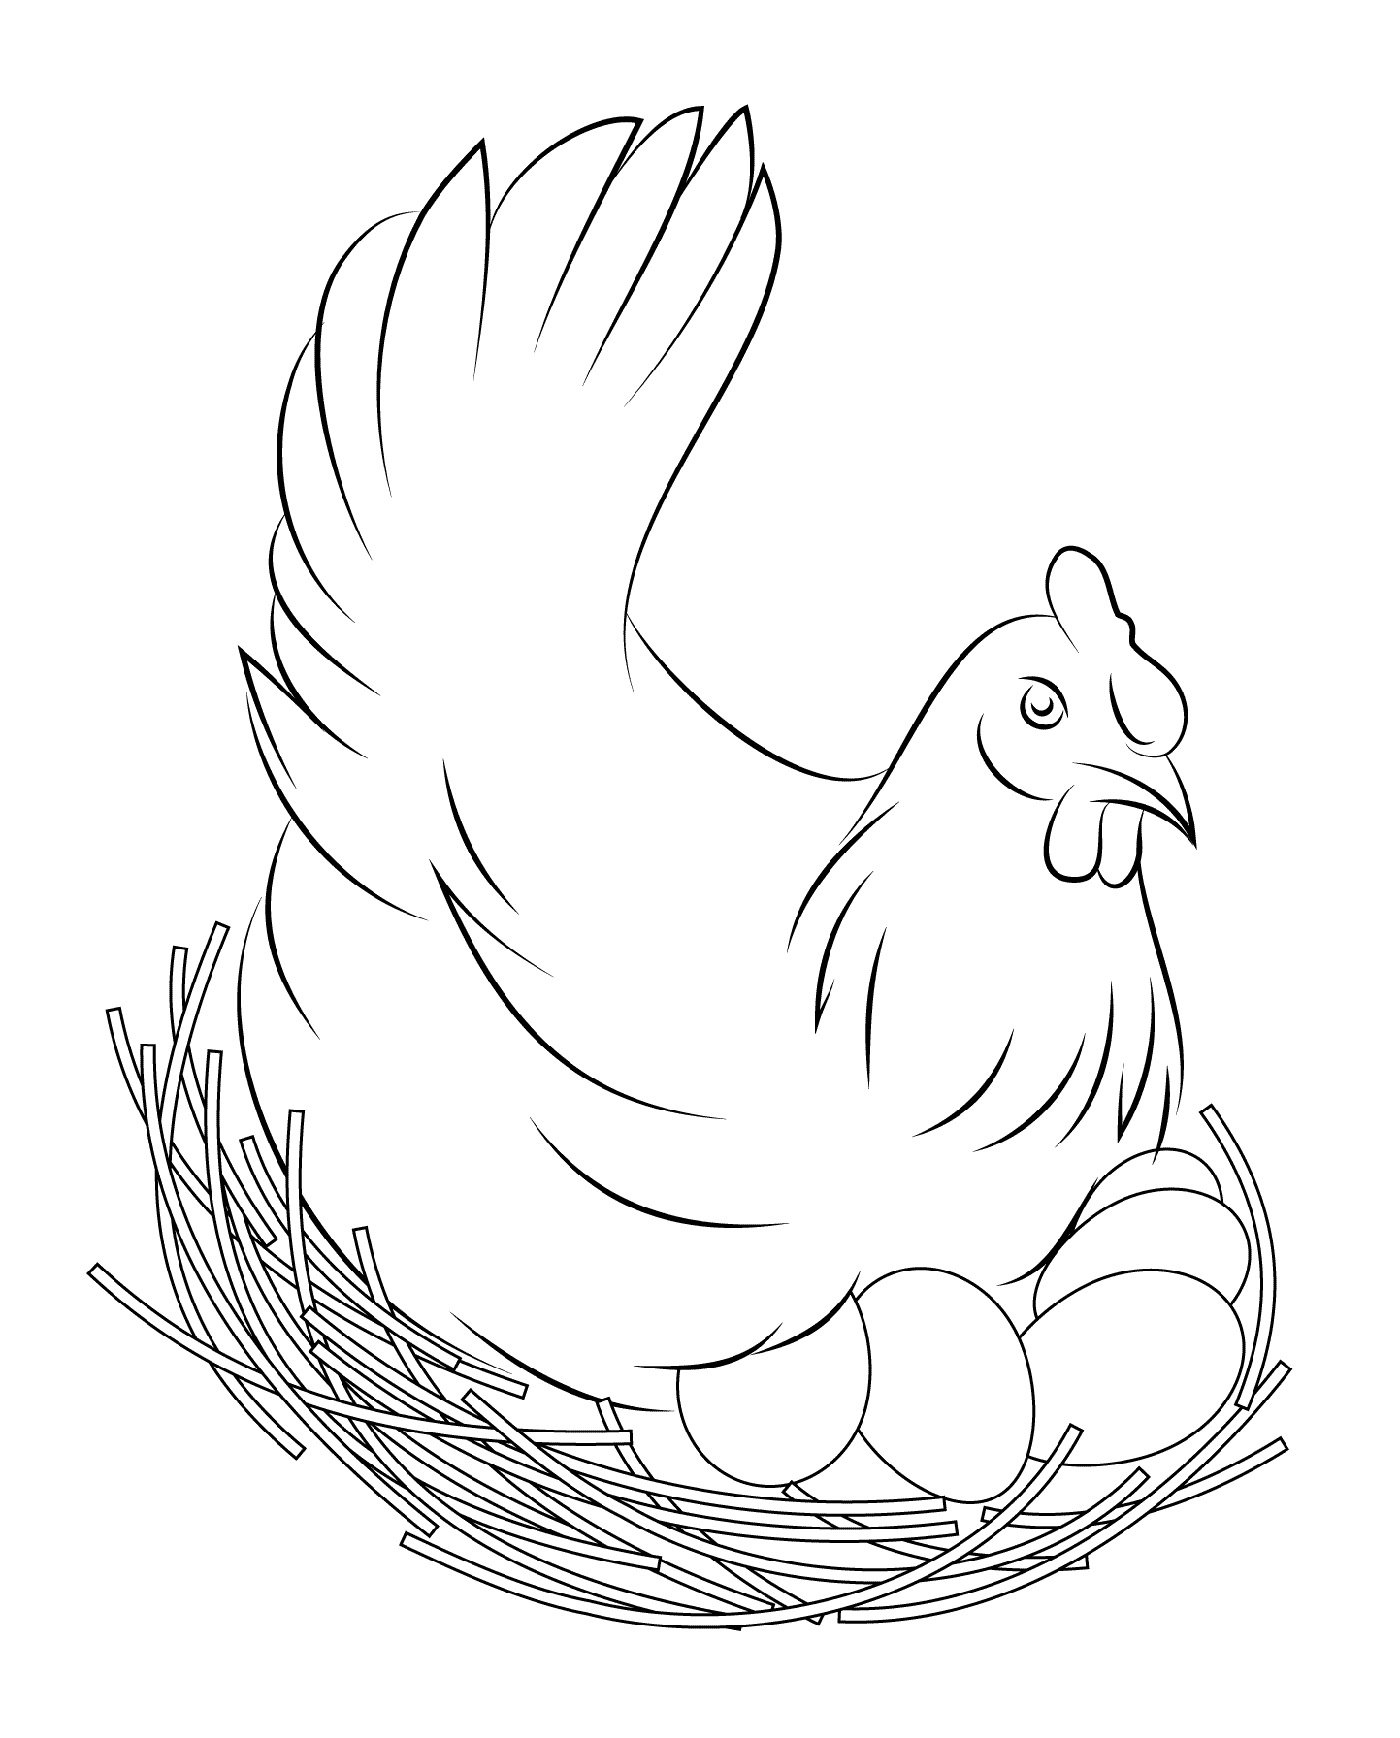 Рисунок курицы карандашом для срисовки